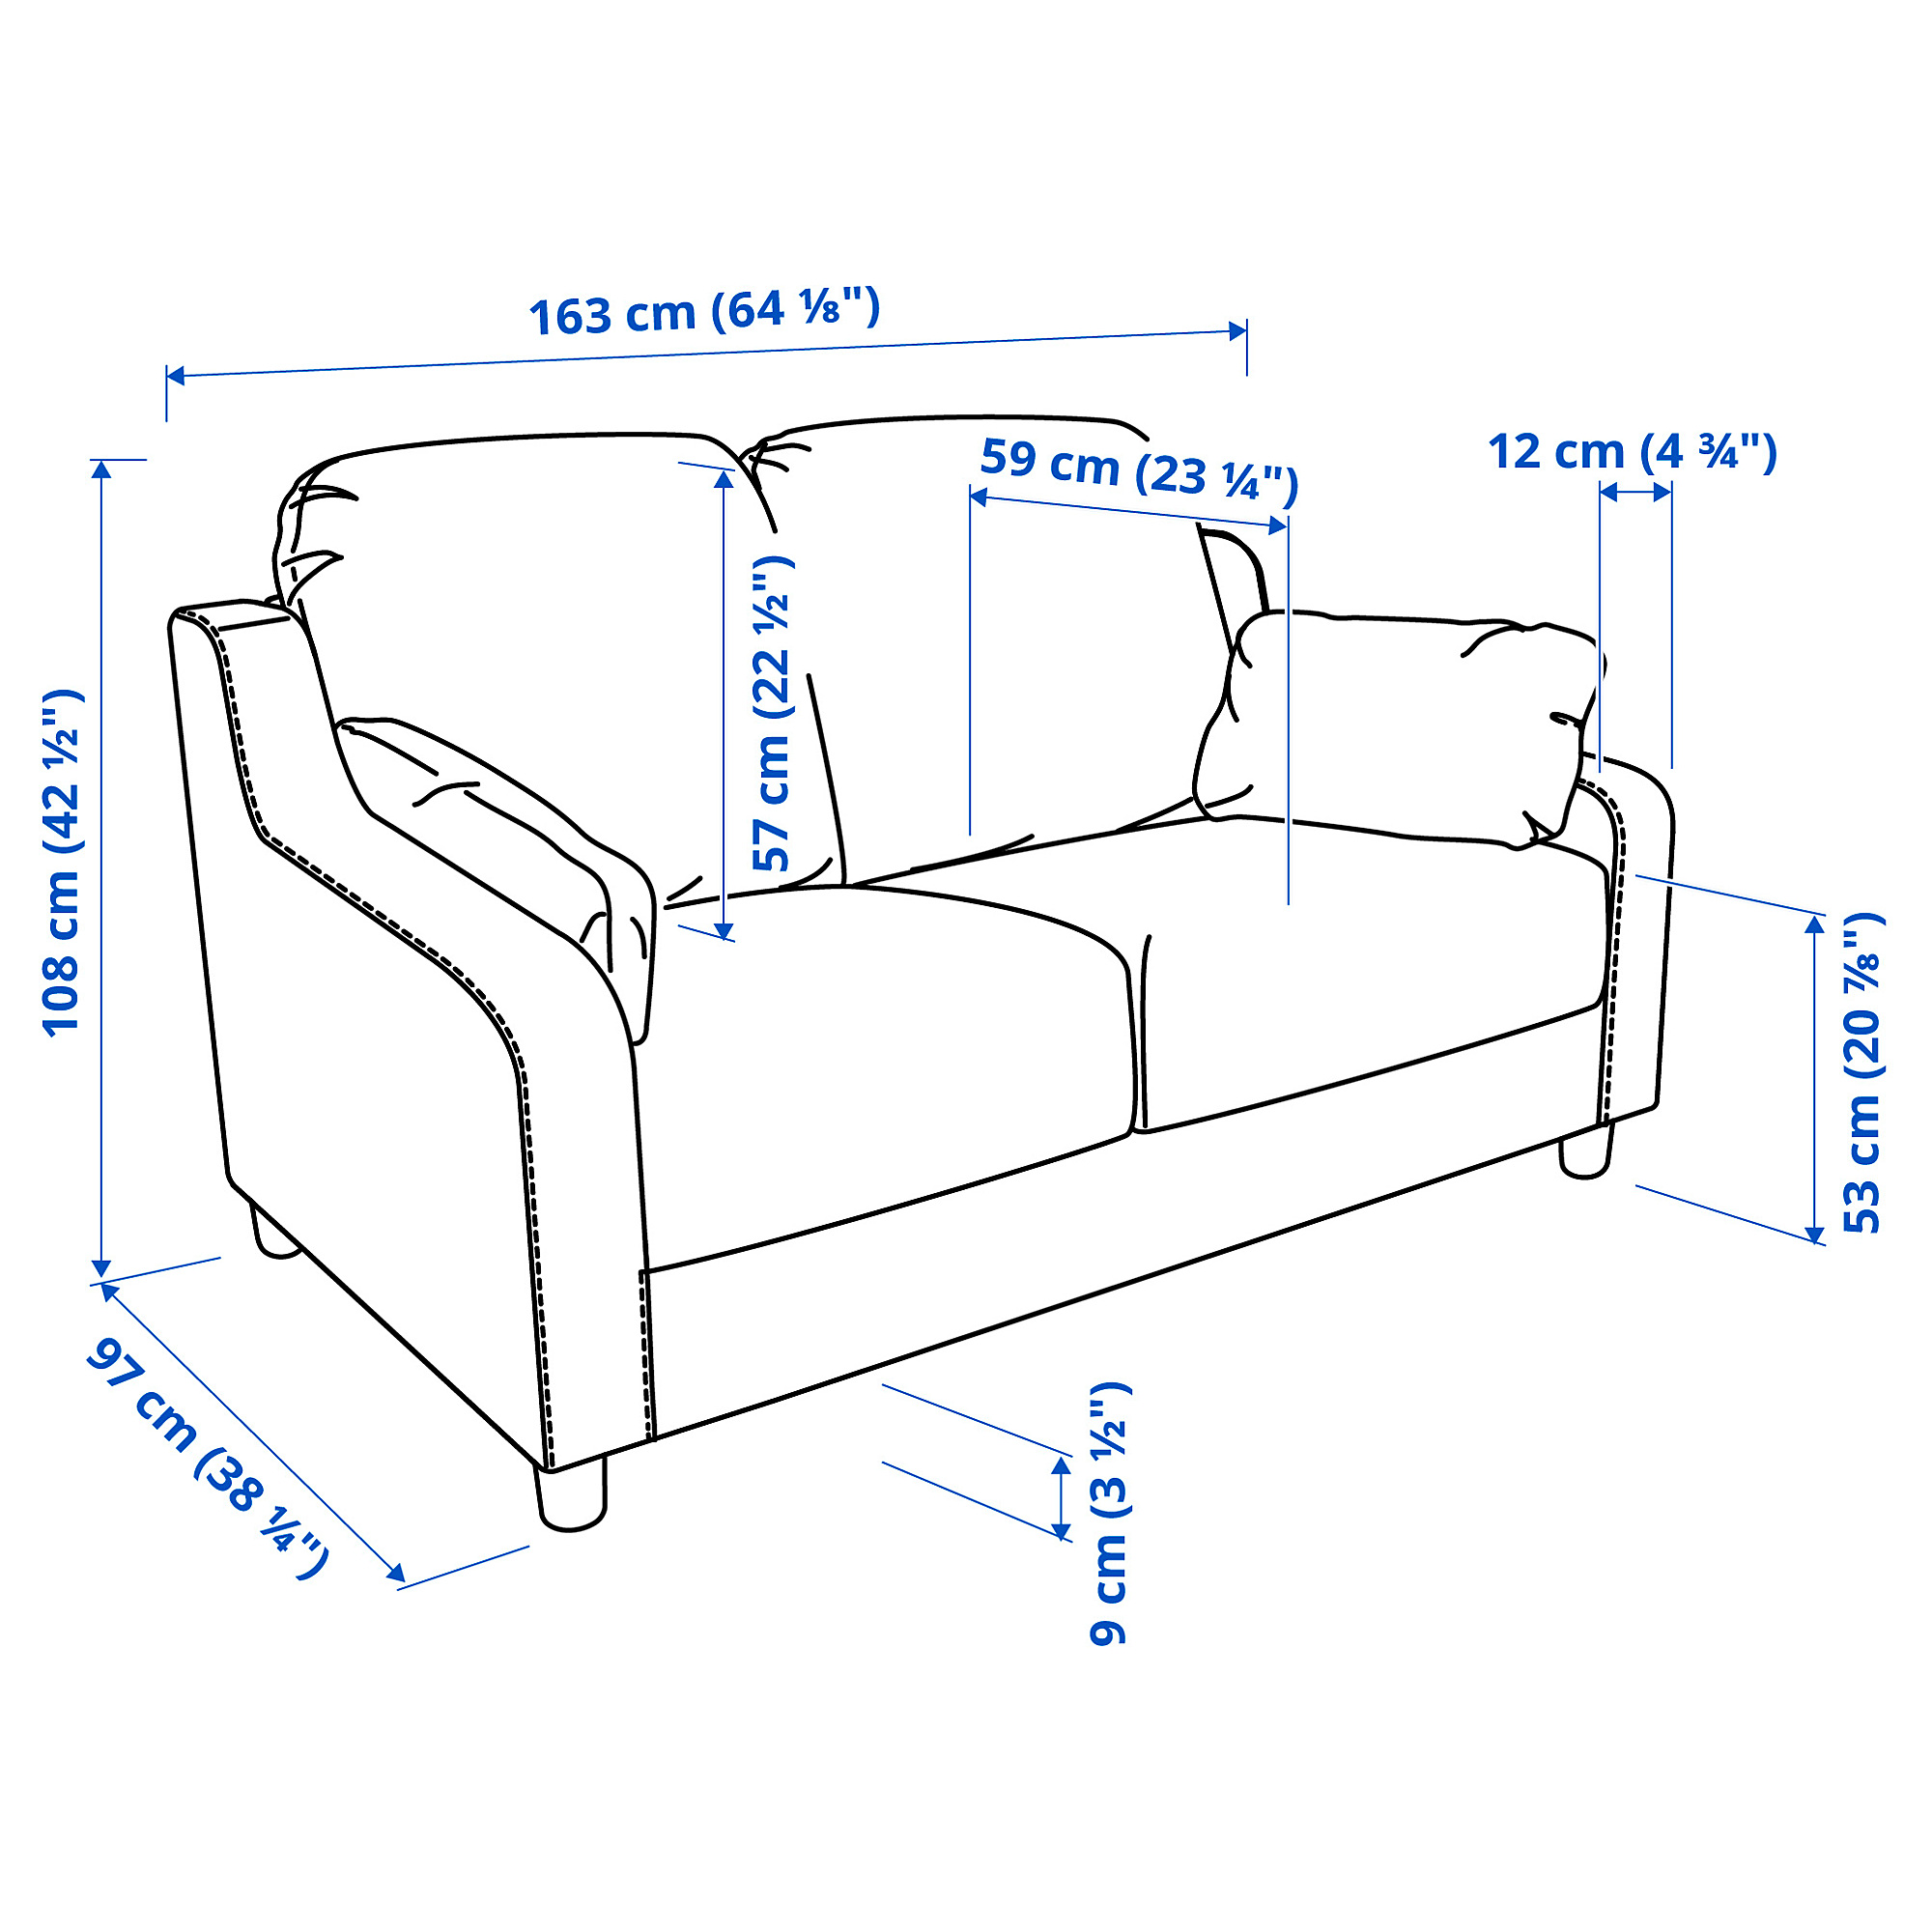 VINLIDEN 2-seat sofa